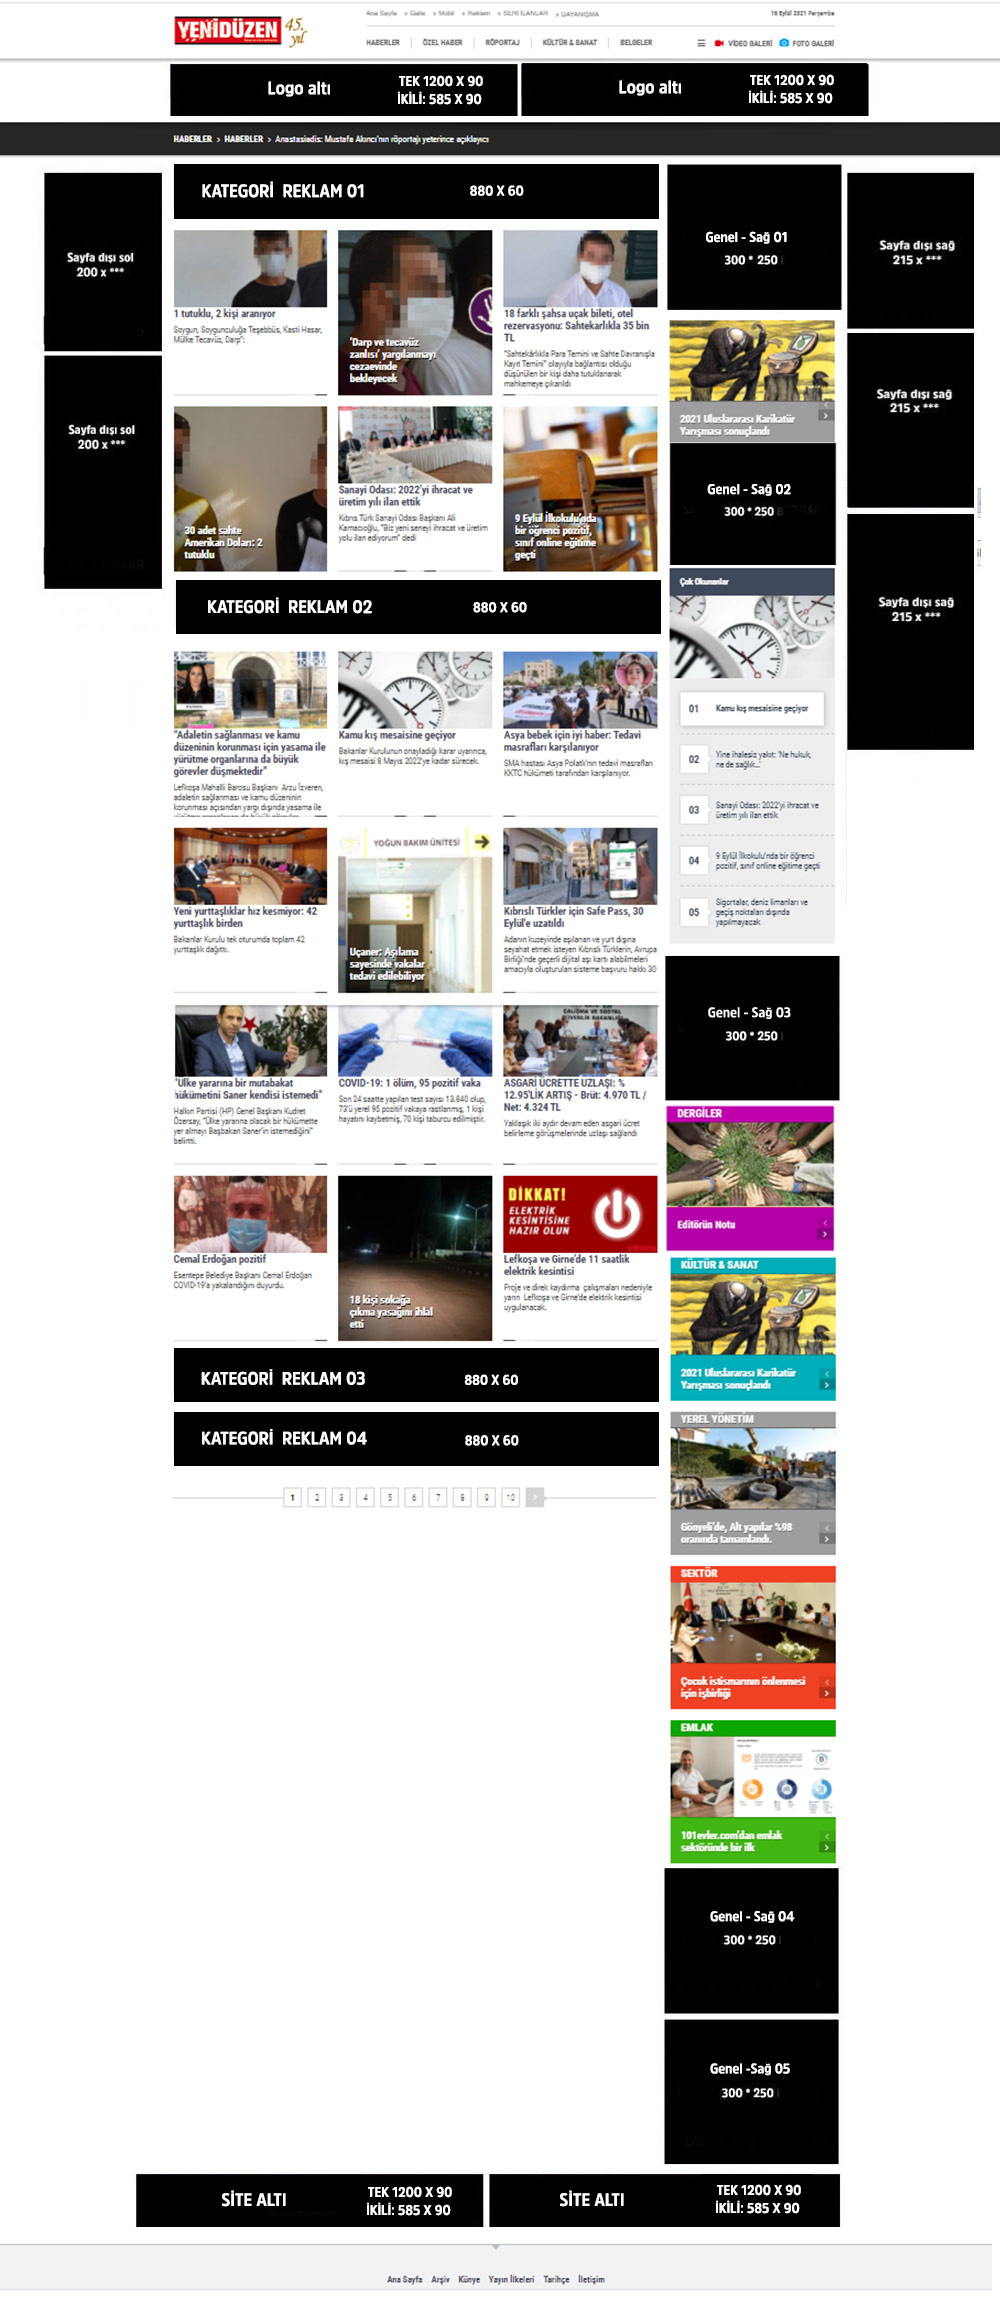 kategori-sayfa-reklam-web-eylul-2021.jpg